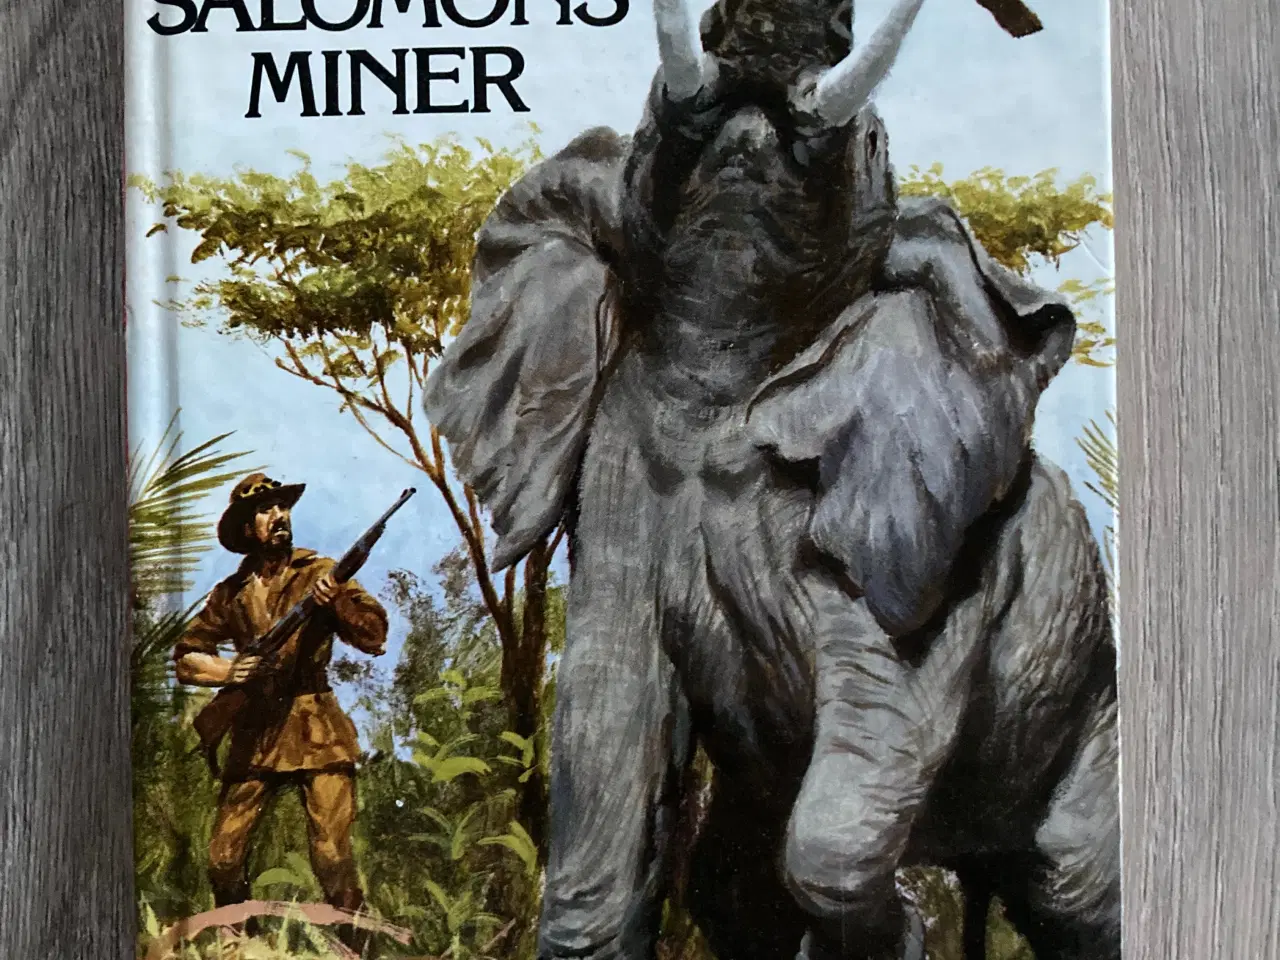 Billede 1 - Bog: Kong Salomons miner af H. Rider Haggard